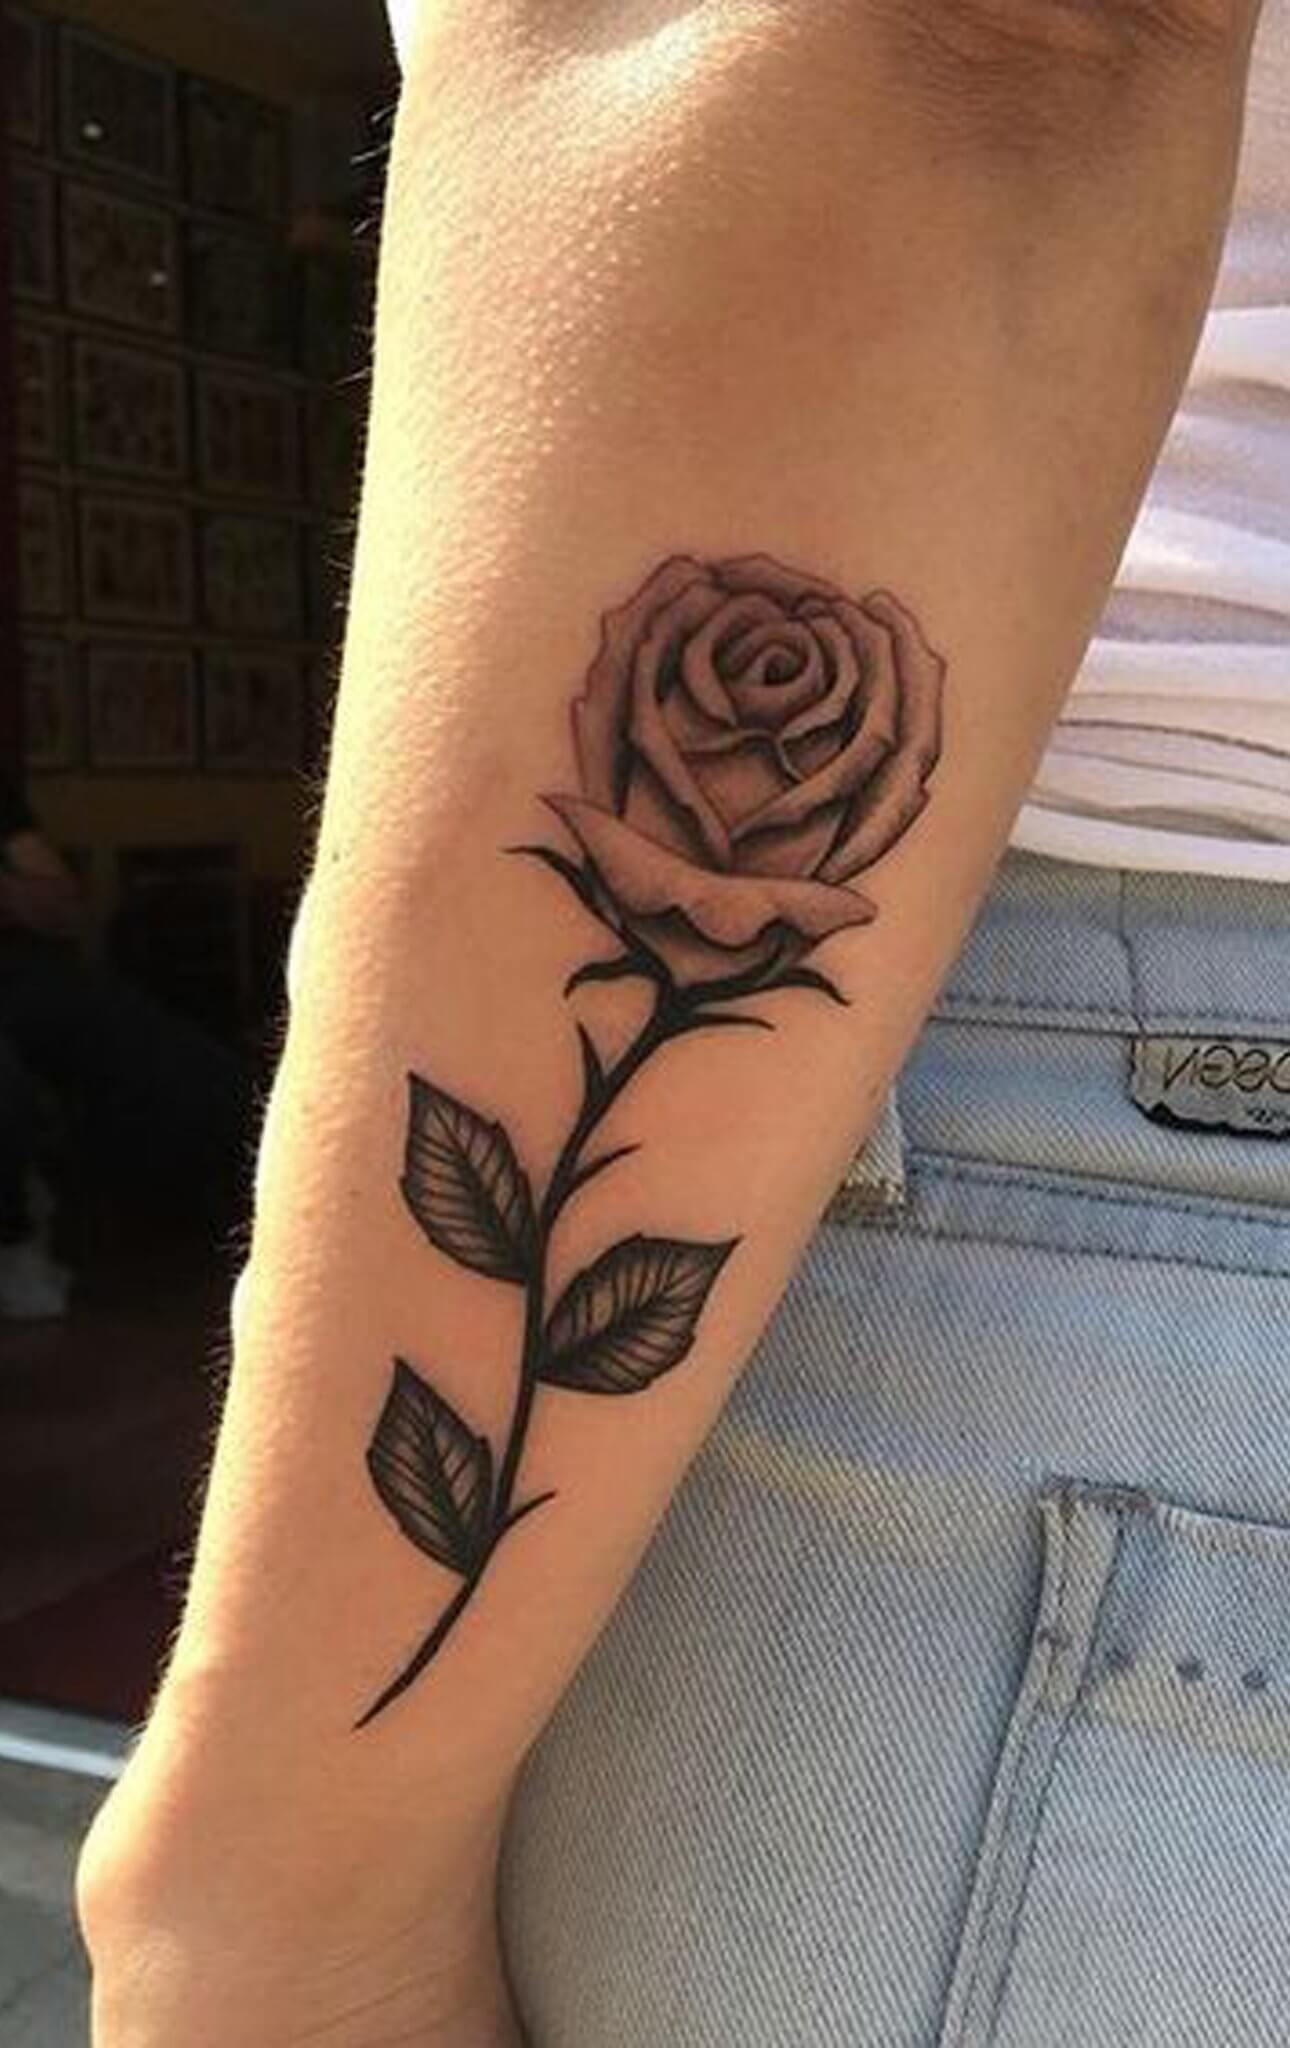 Forearm Rose Tattoo